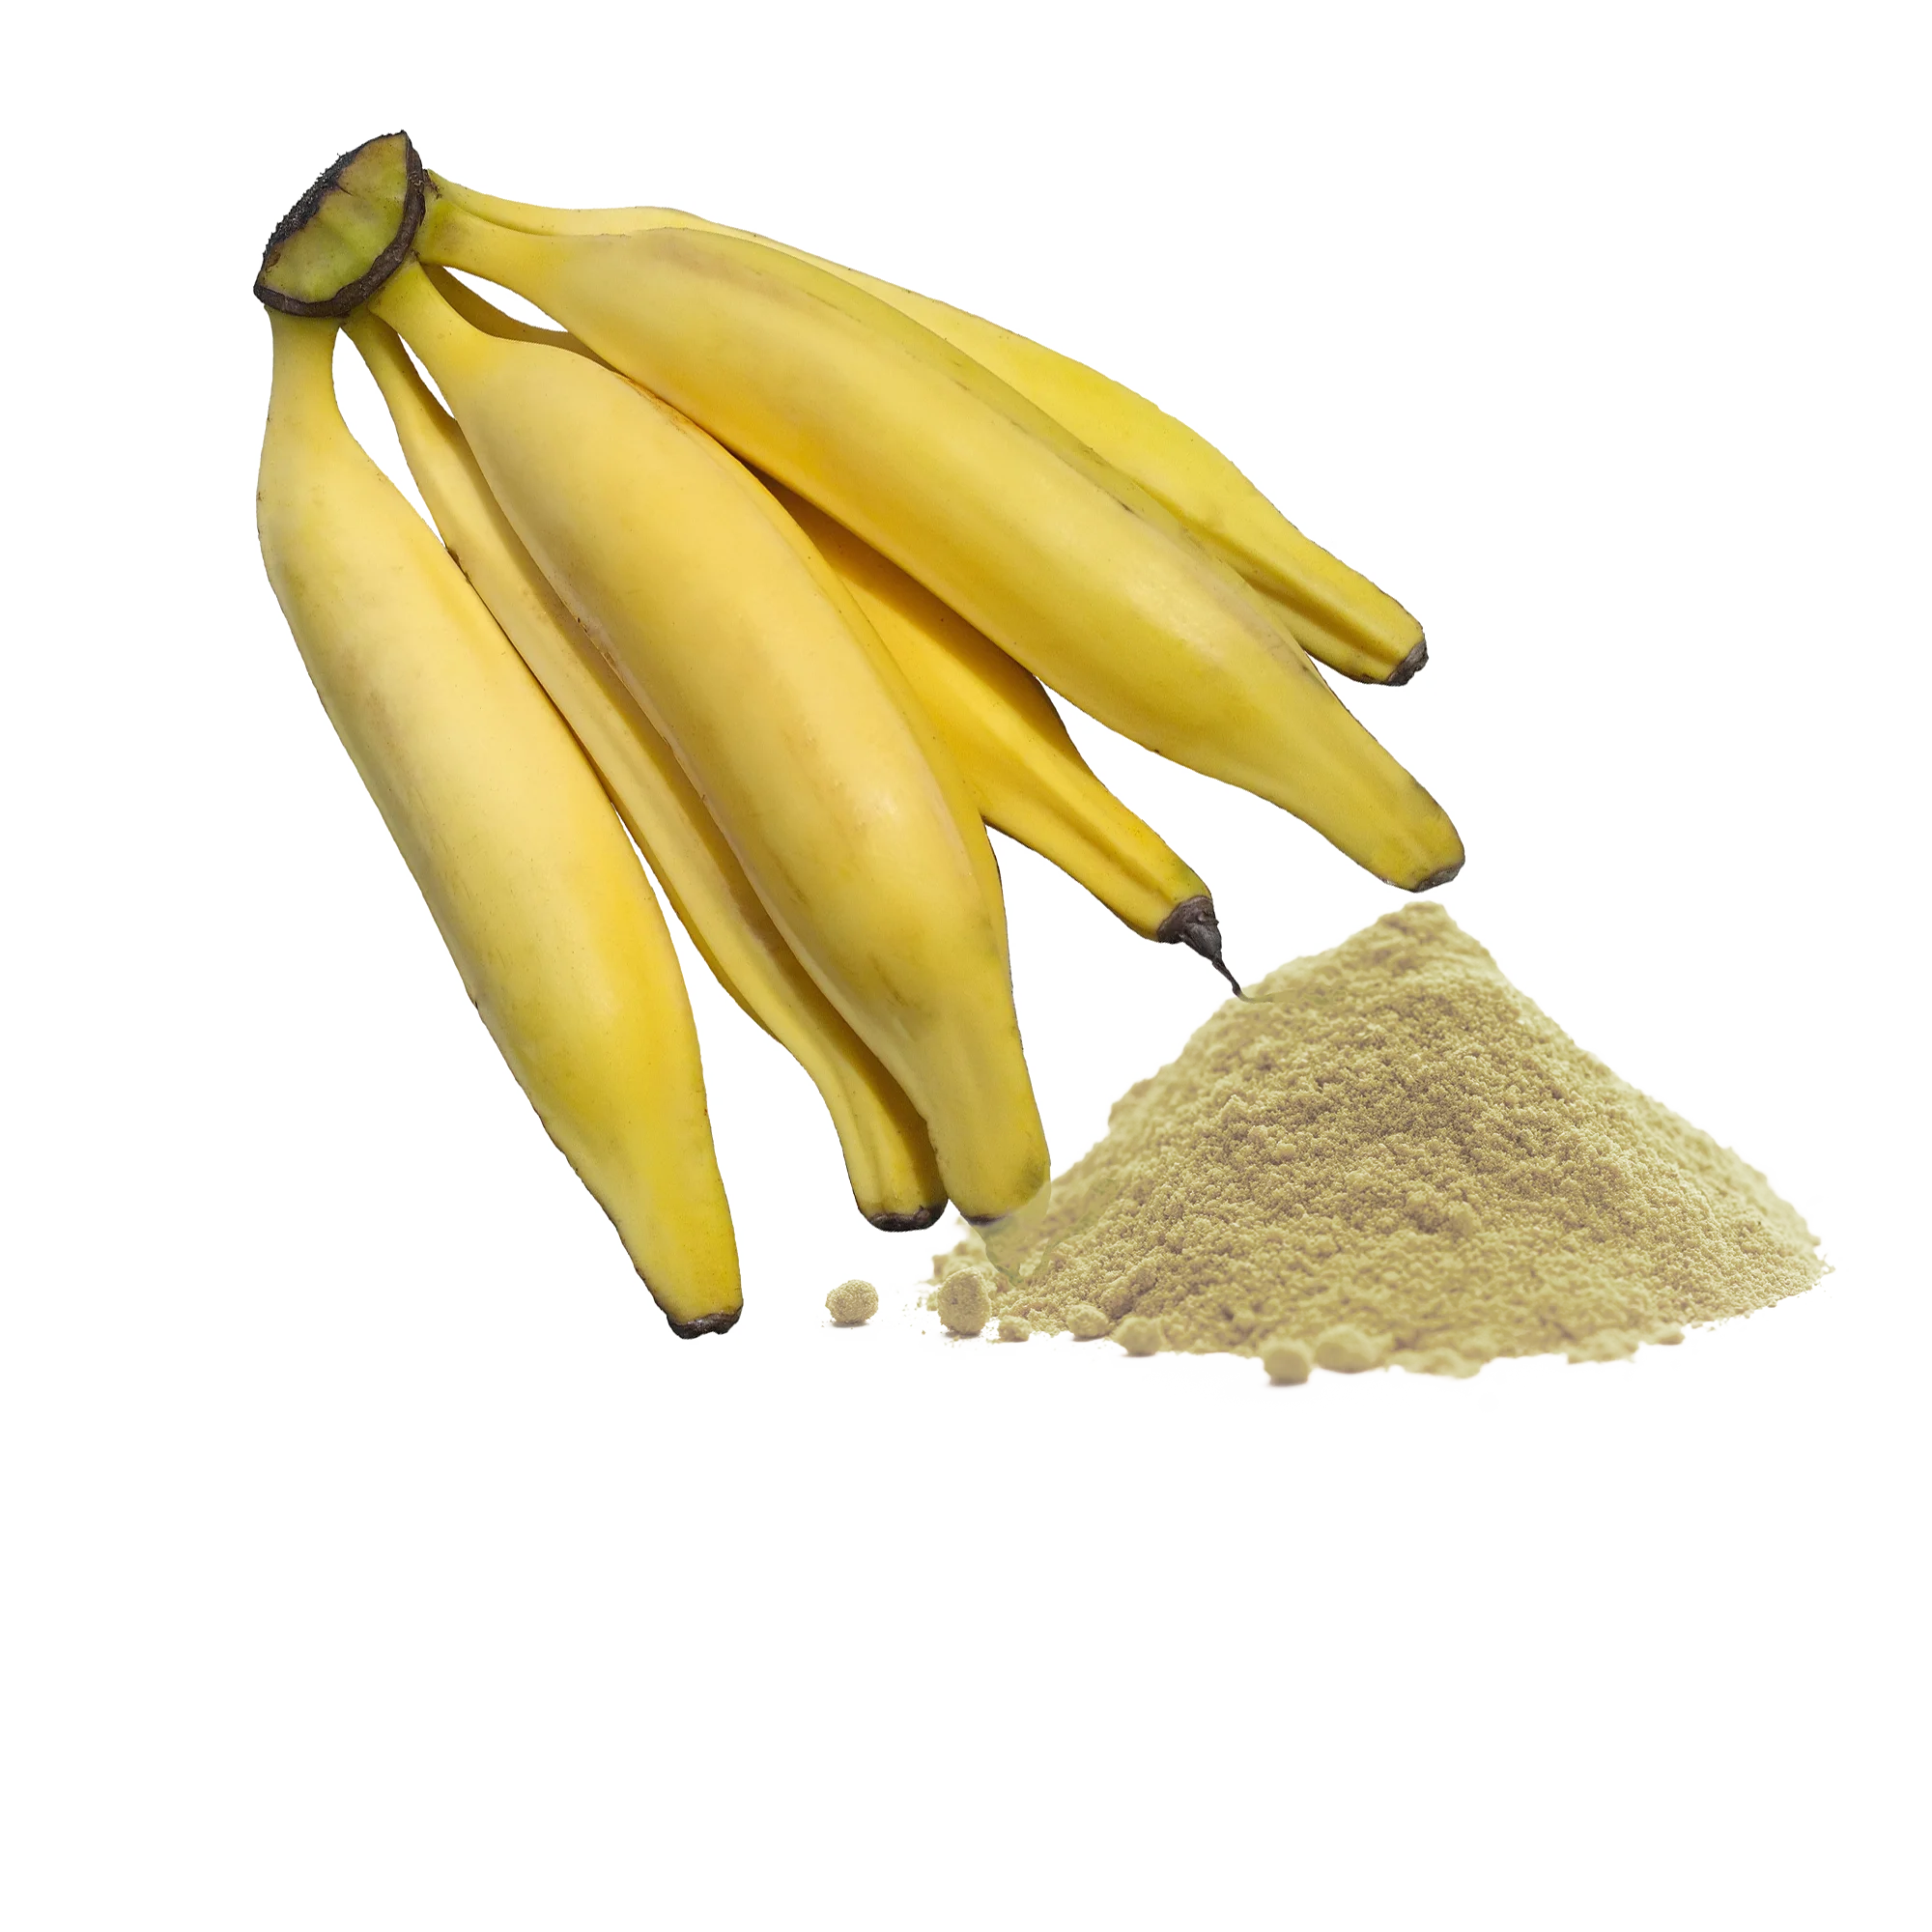 Poudre de banane plantain